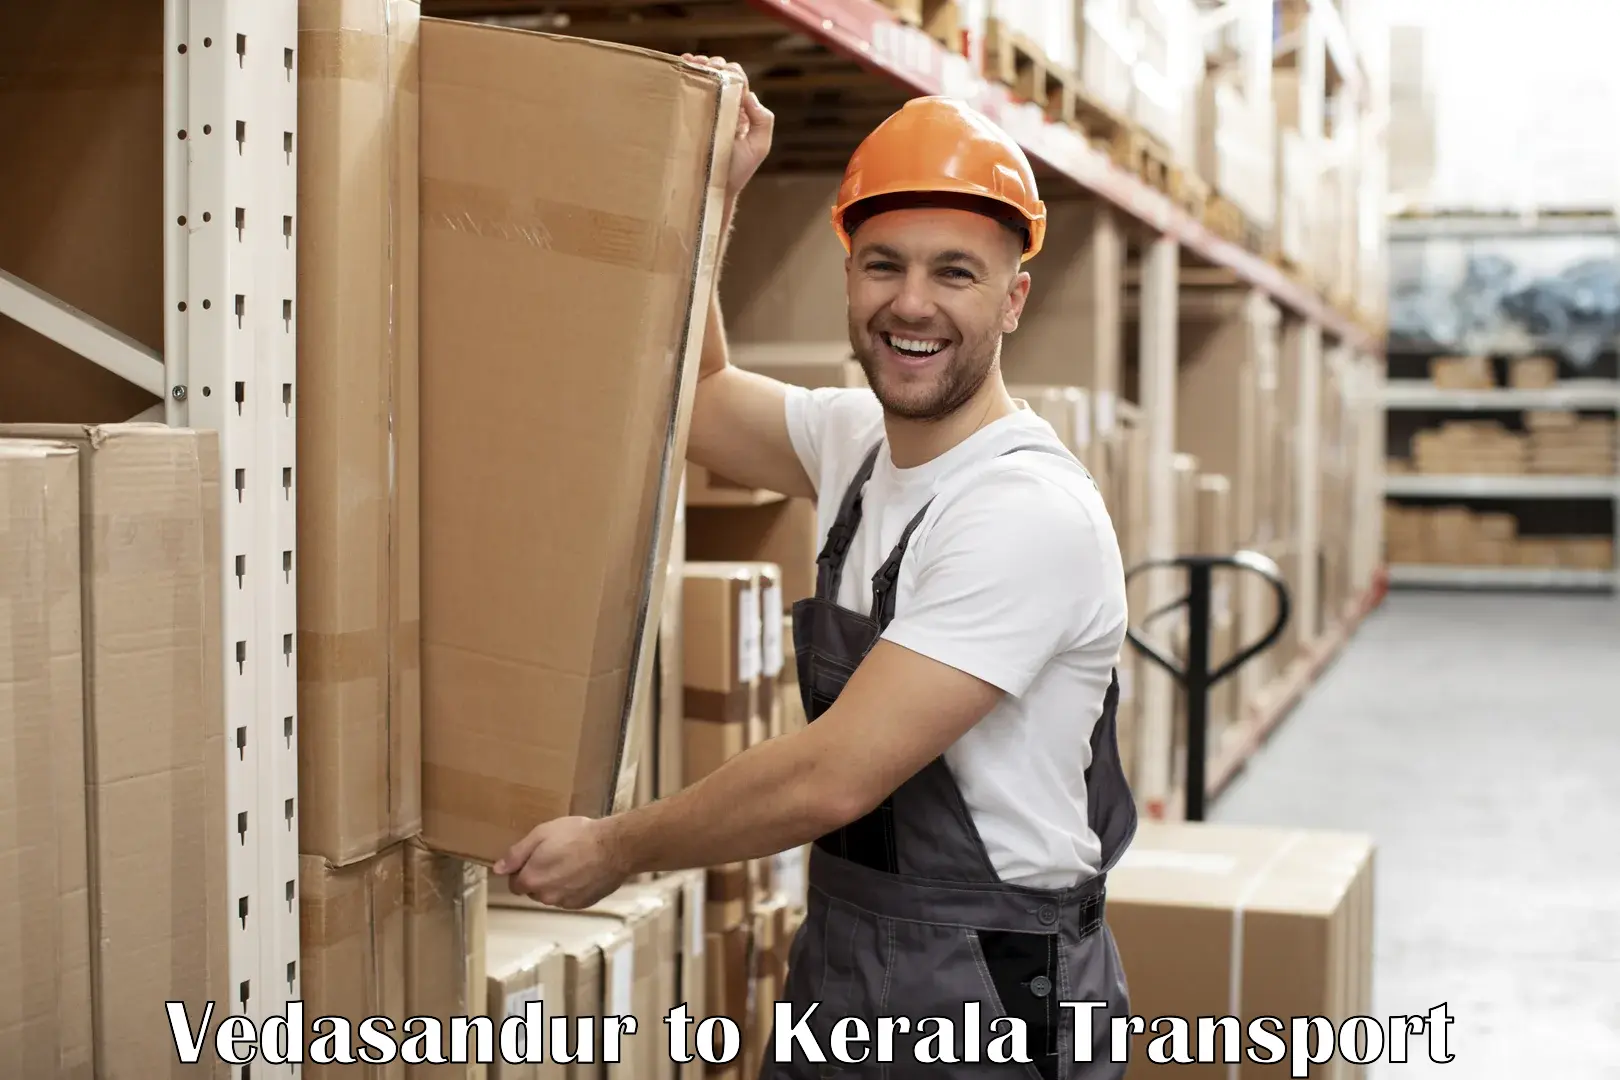 Pick up transport service Vedasandur to Kerala University Thiruvananthapuram